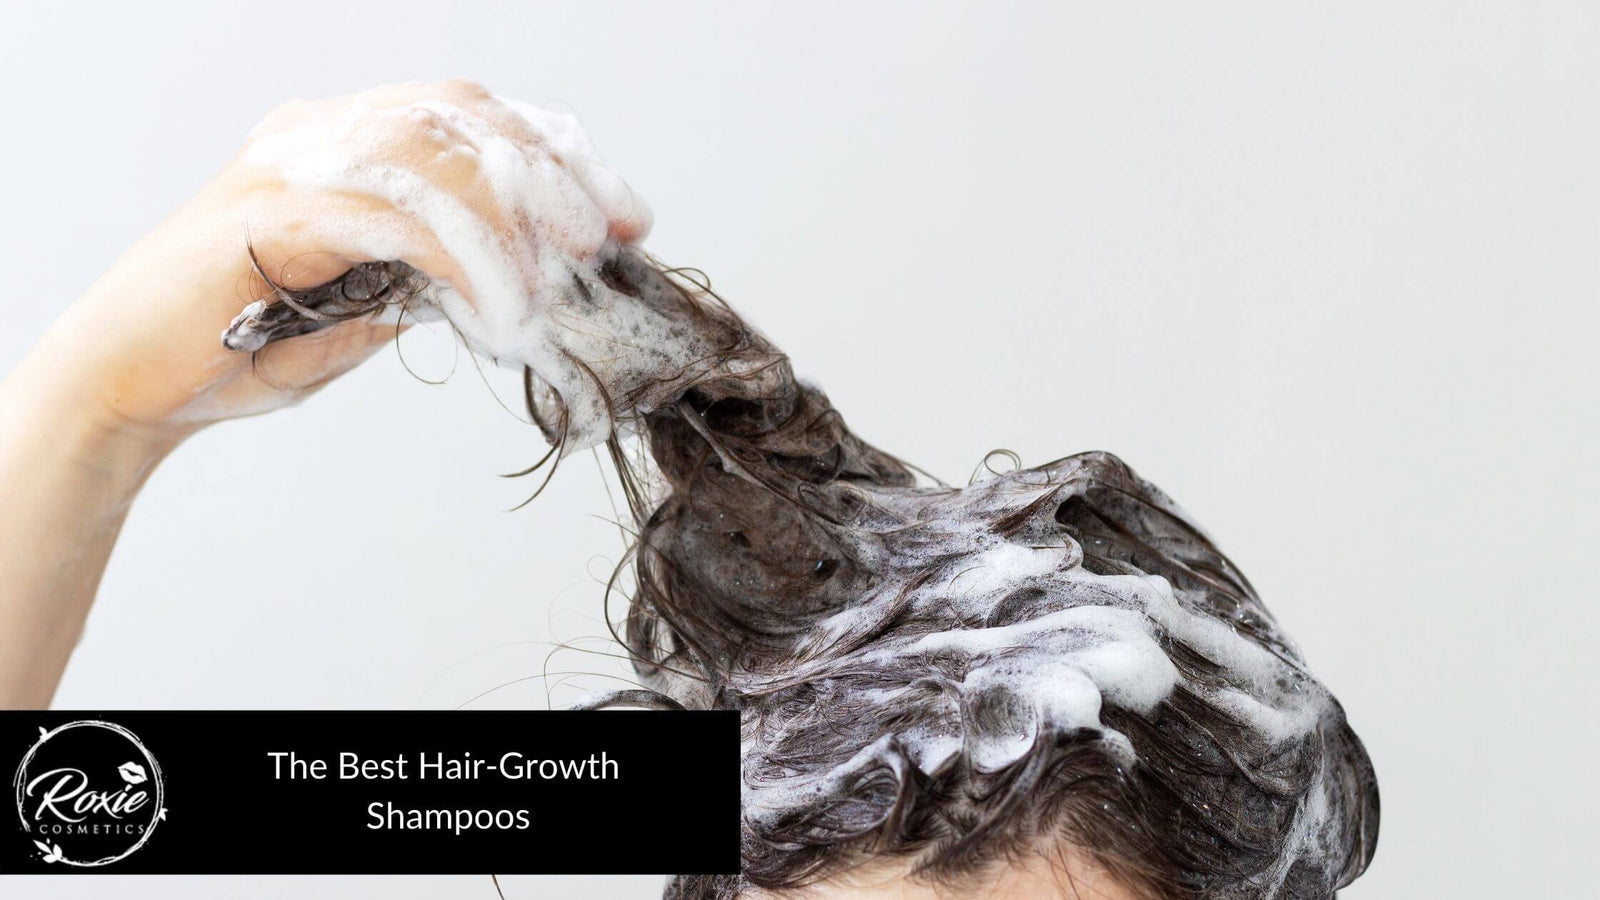 Hair-Growth Shampoo